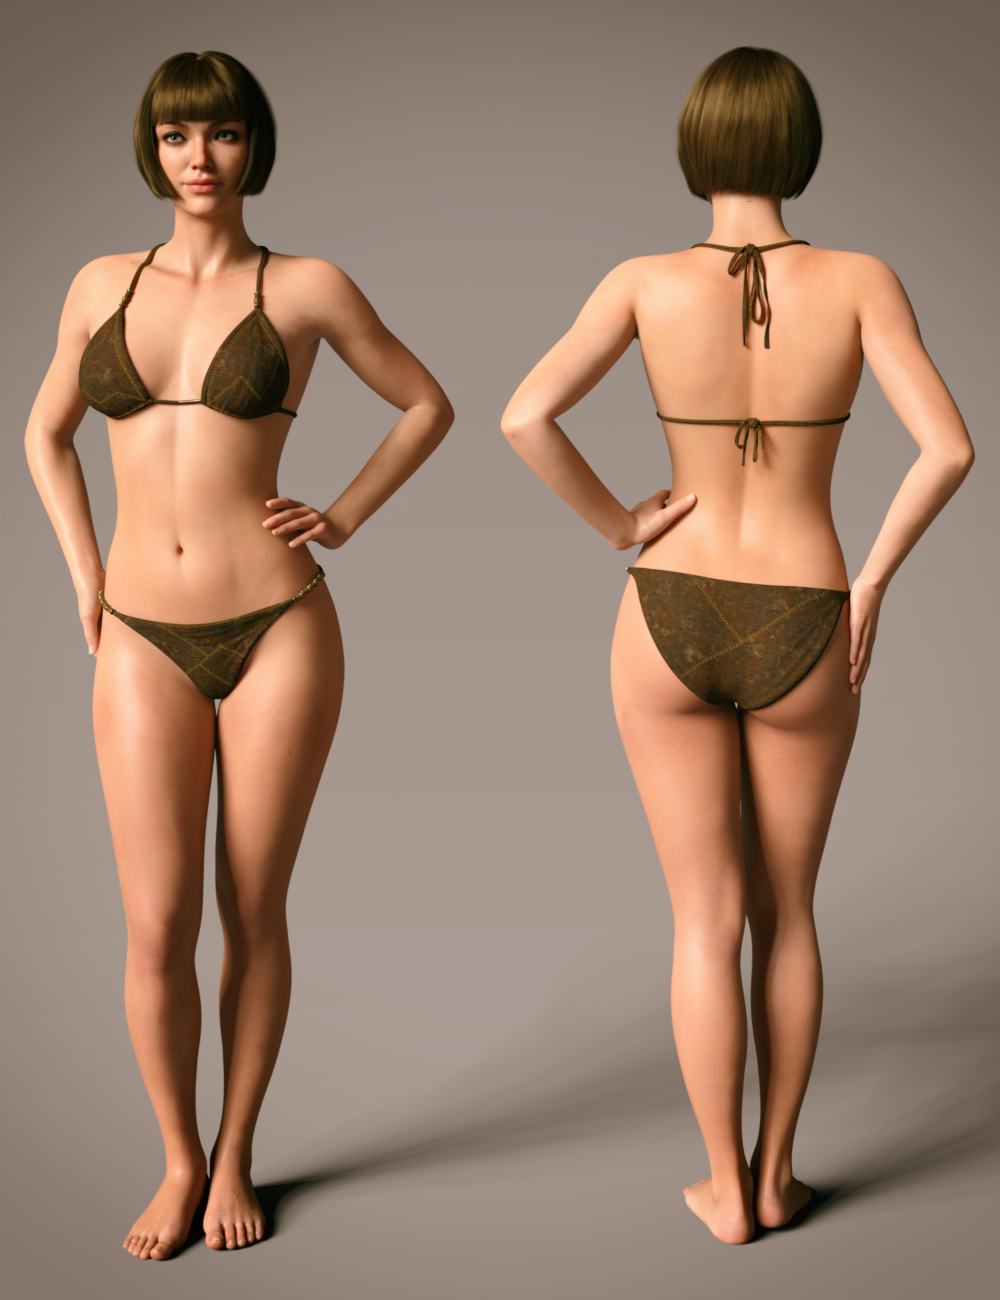 Makasha HD for Genesis 8.1 Female by: Goanna, 3D Models by Daz 3D